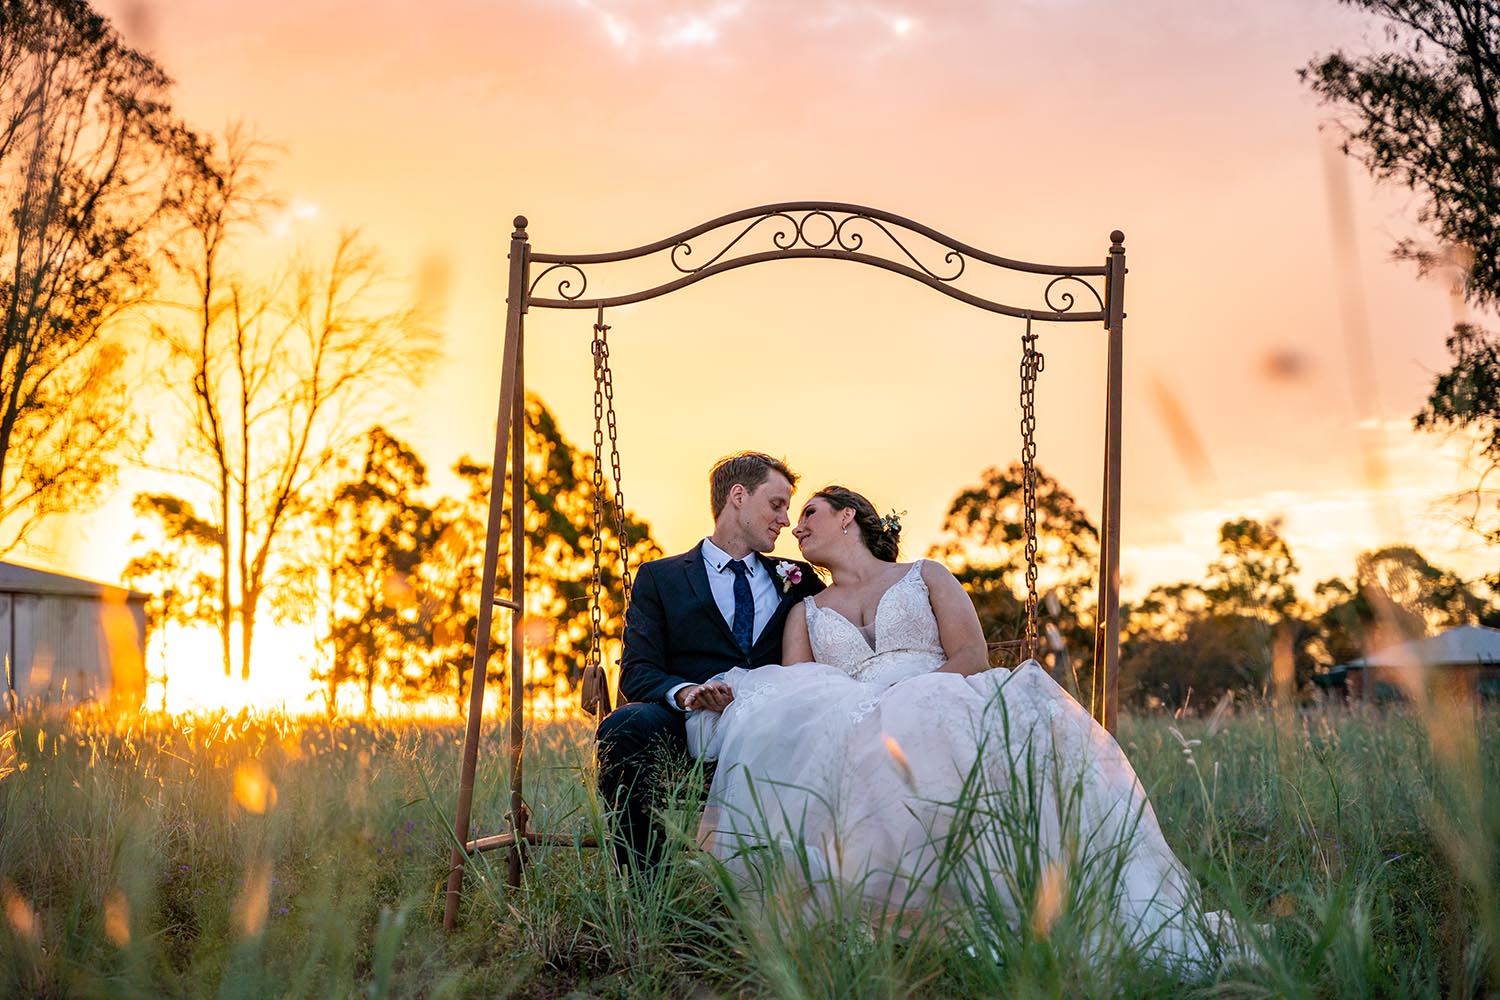 Wedding Photography - Couple on swing